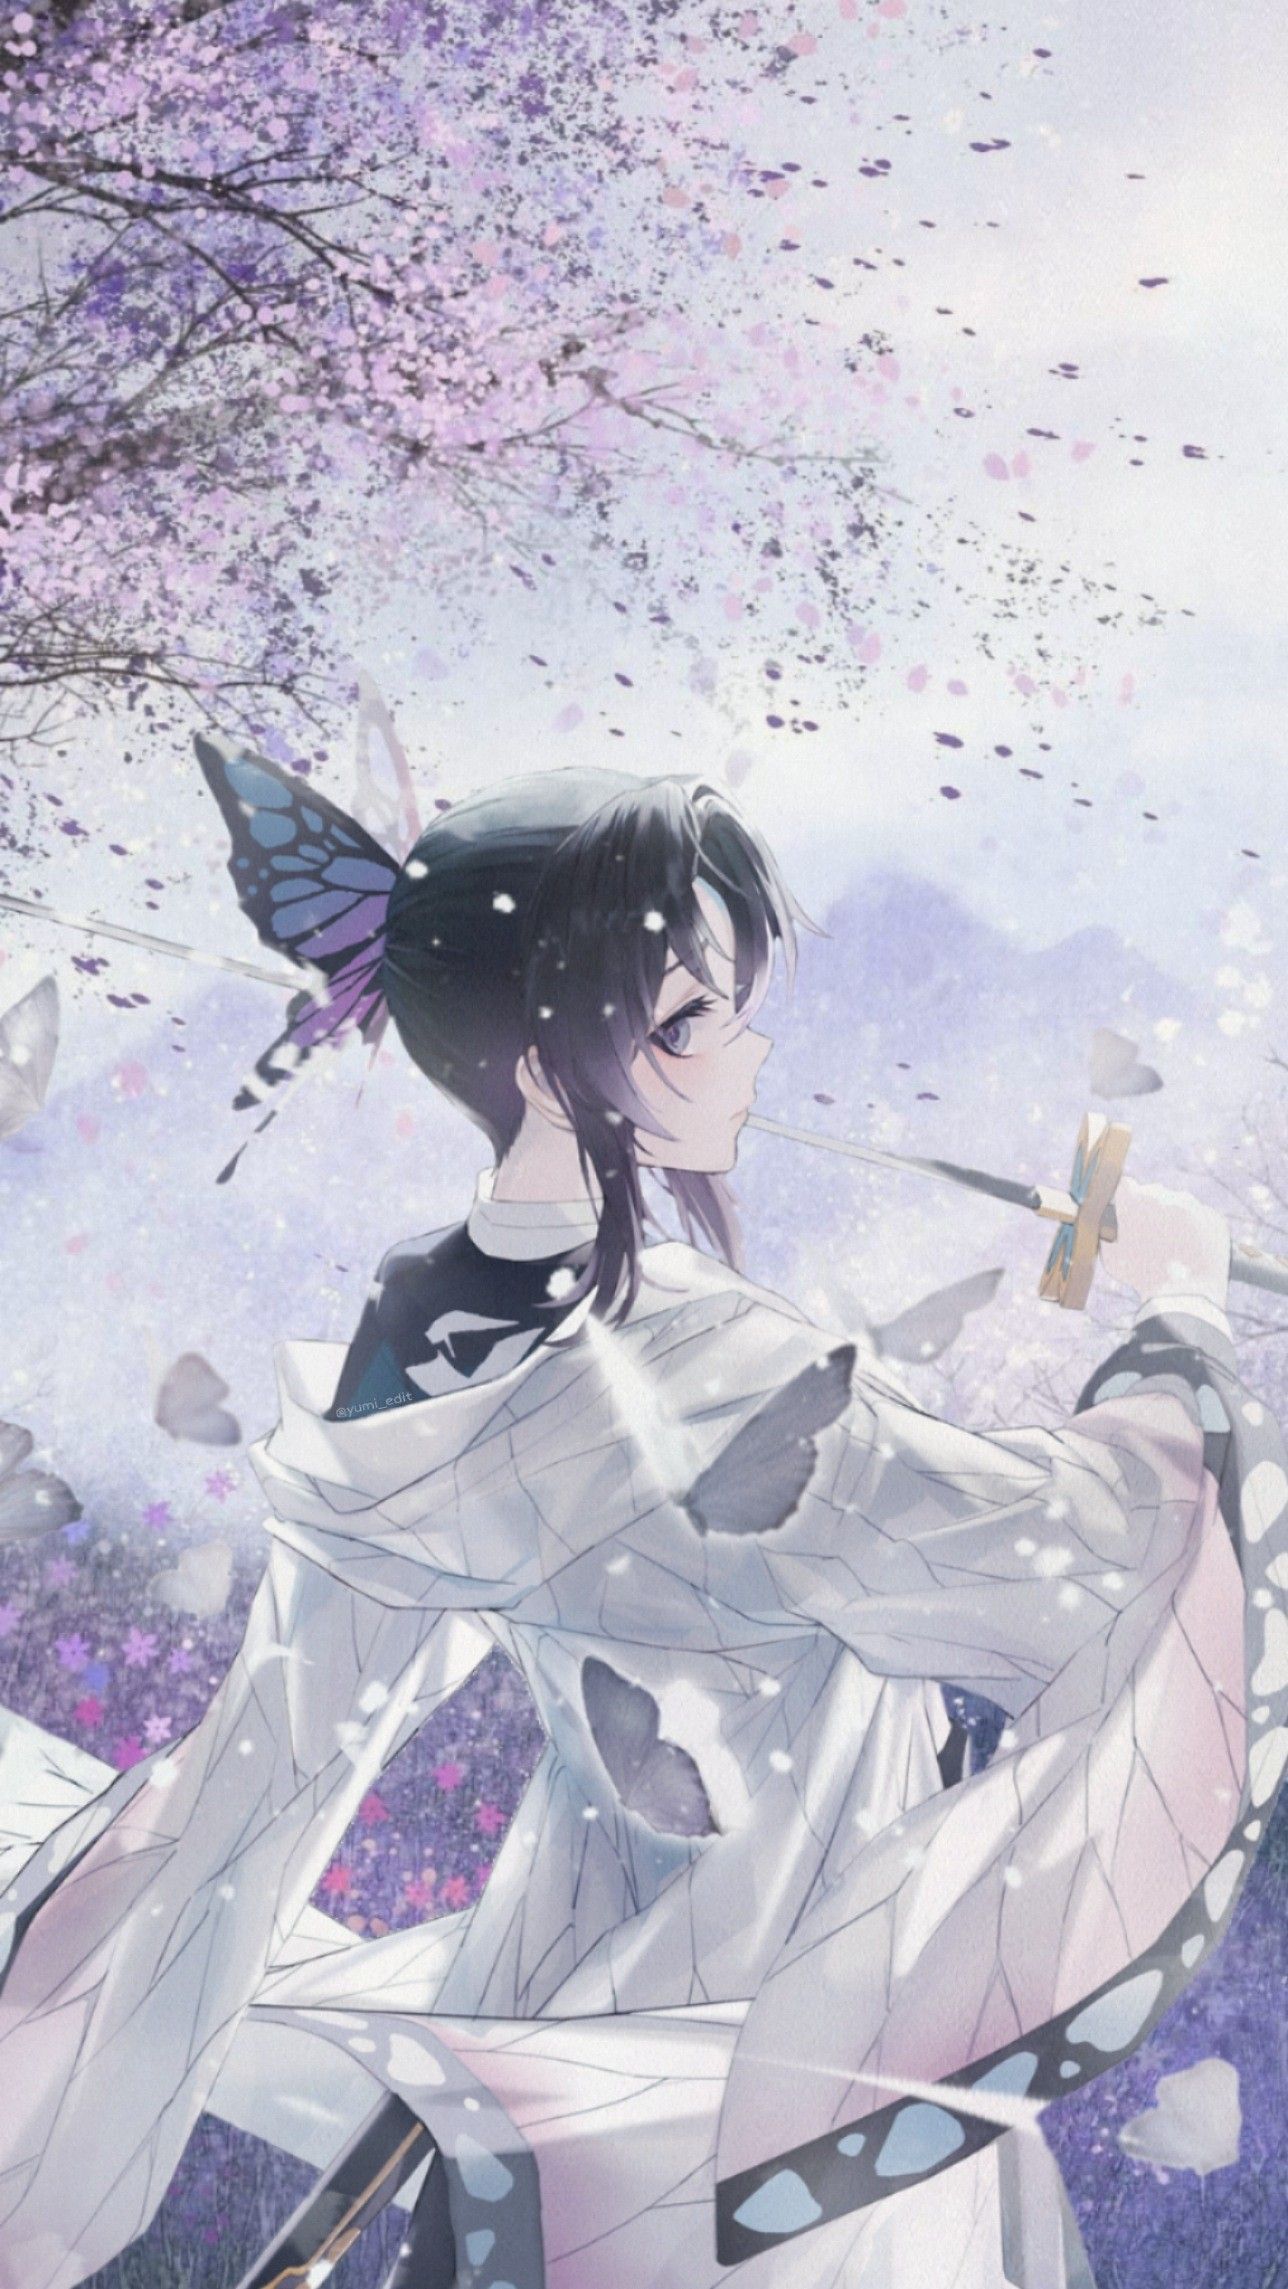 Shinobu Aesthetic wallpapher demon slayer. Aesthetic anime, Anime wallpaper, Anime angel